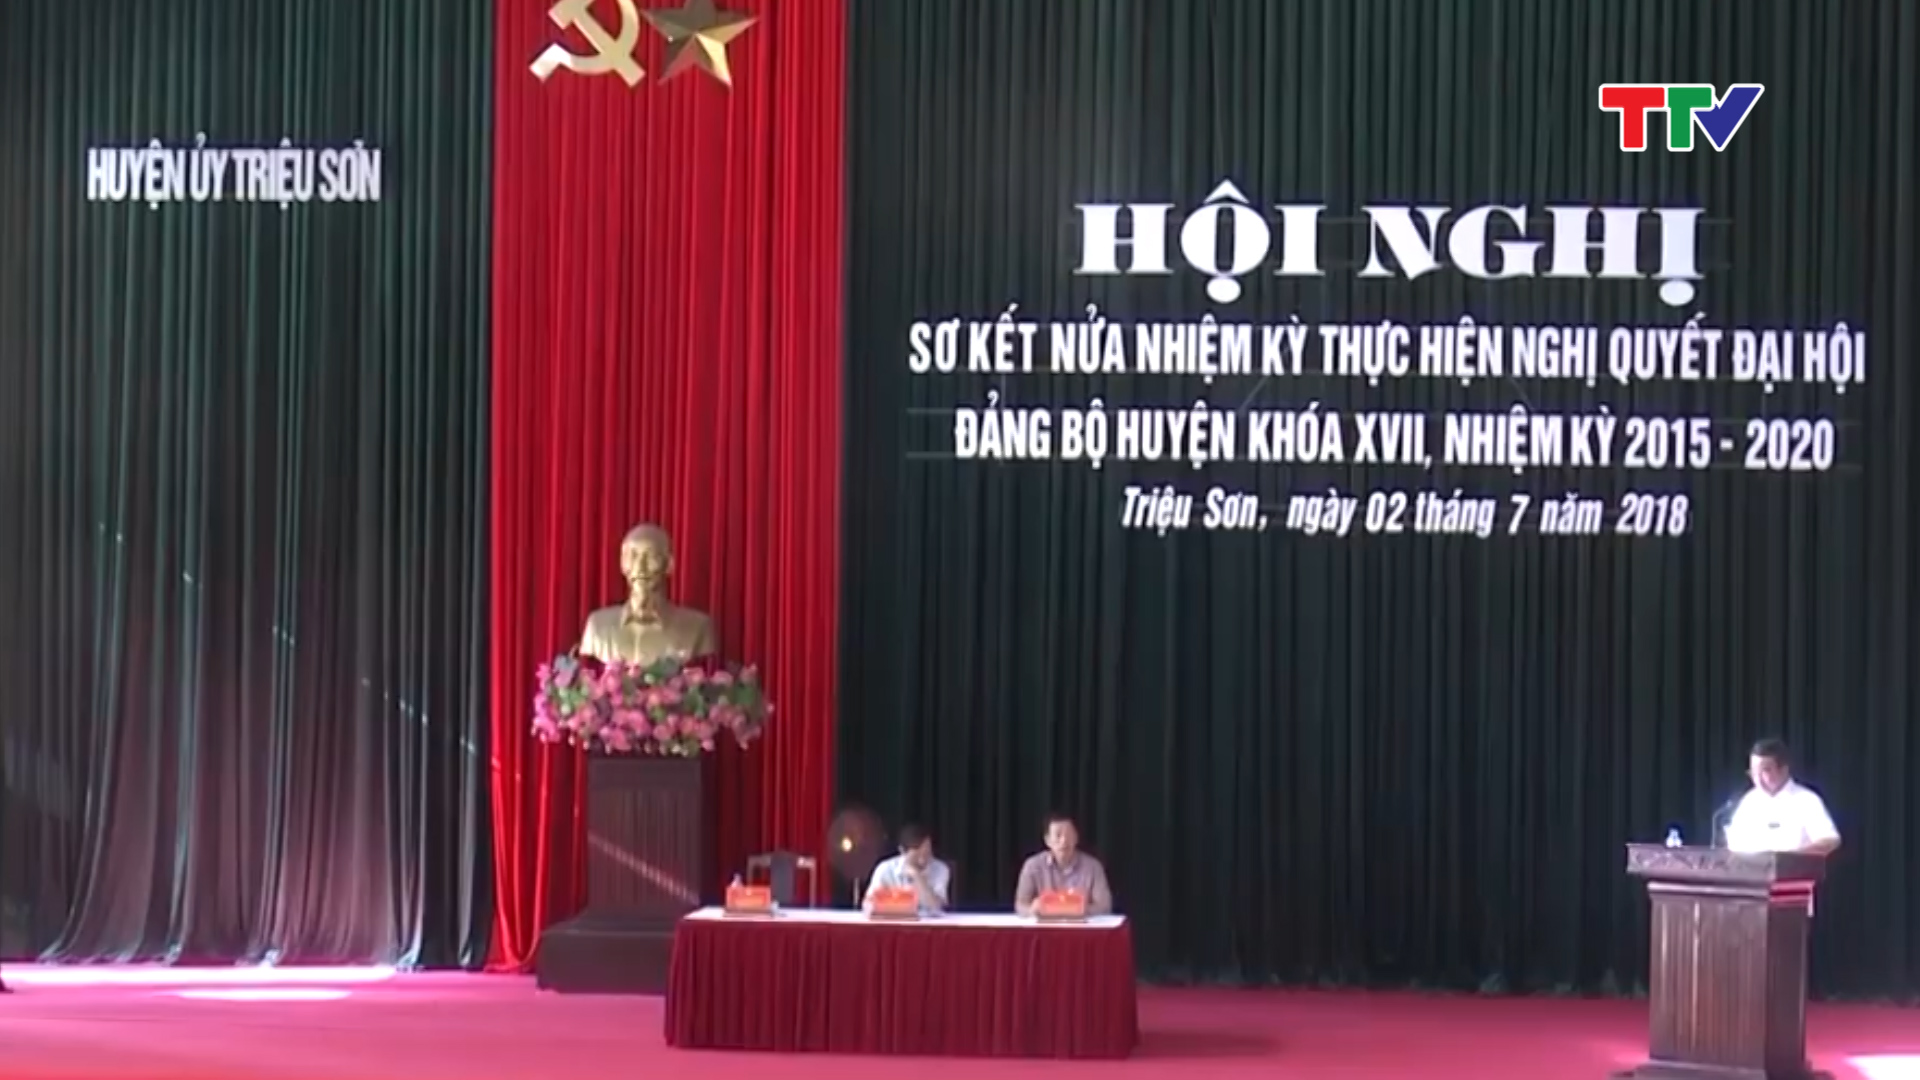 Huyện Triệu Sơn tổ chức sơ kết nửa nhiệm kỳ thực hiện Nghị quyết đại hội Đảng bộ huyện khóa XVII, nhiệm kỳ 2015-2020